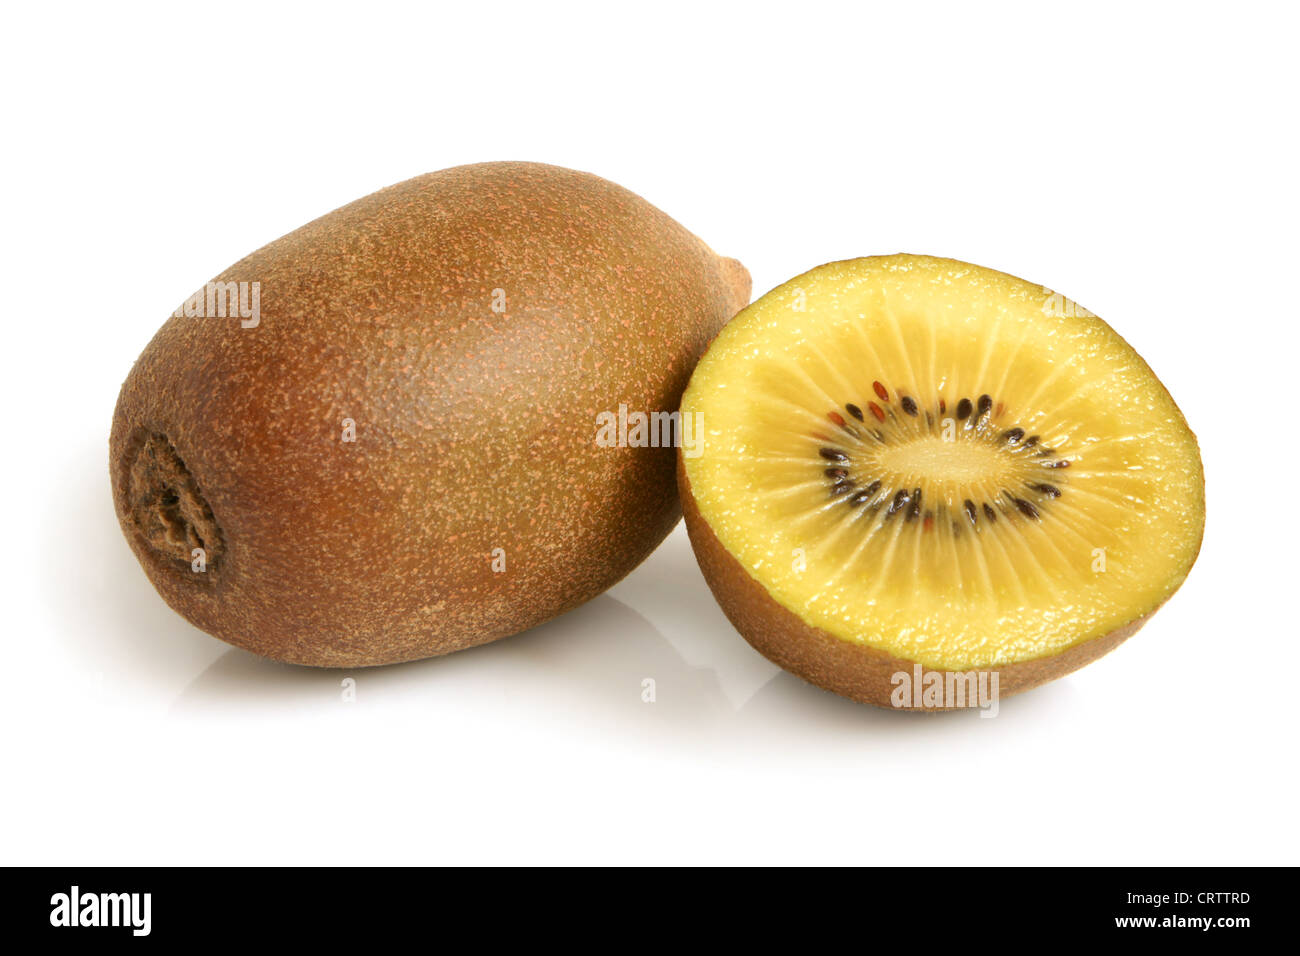 Gold kiwi fruit Stock Photo